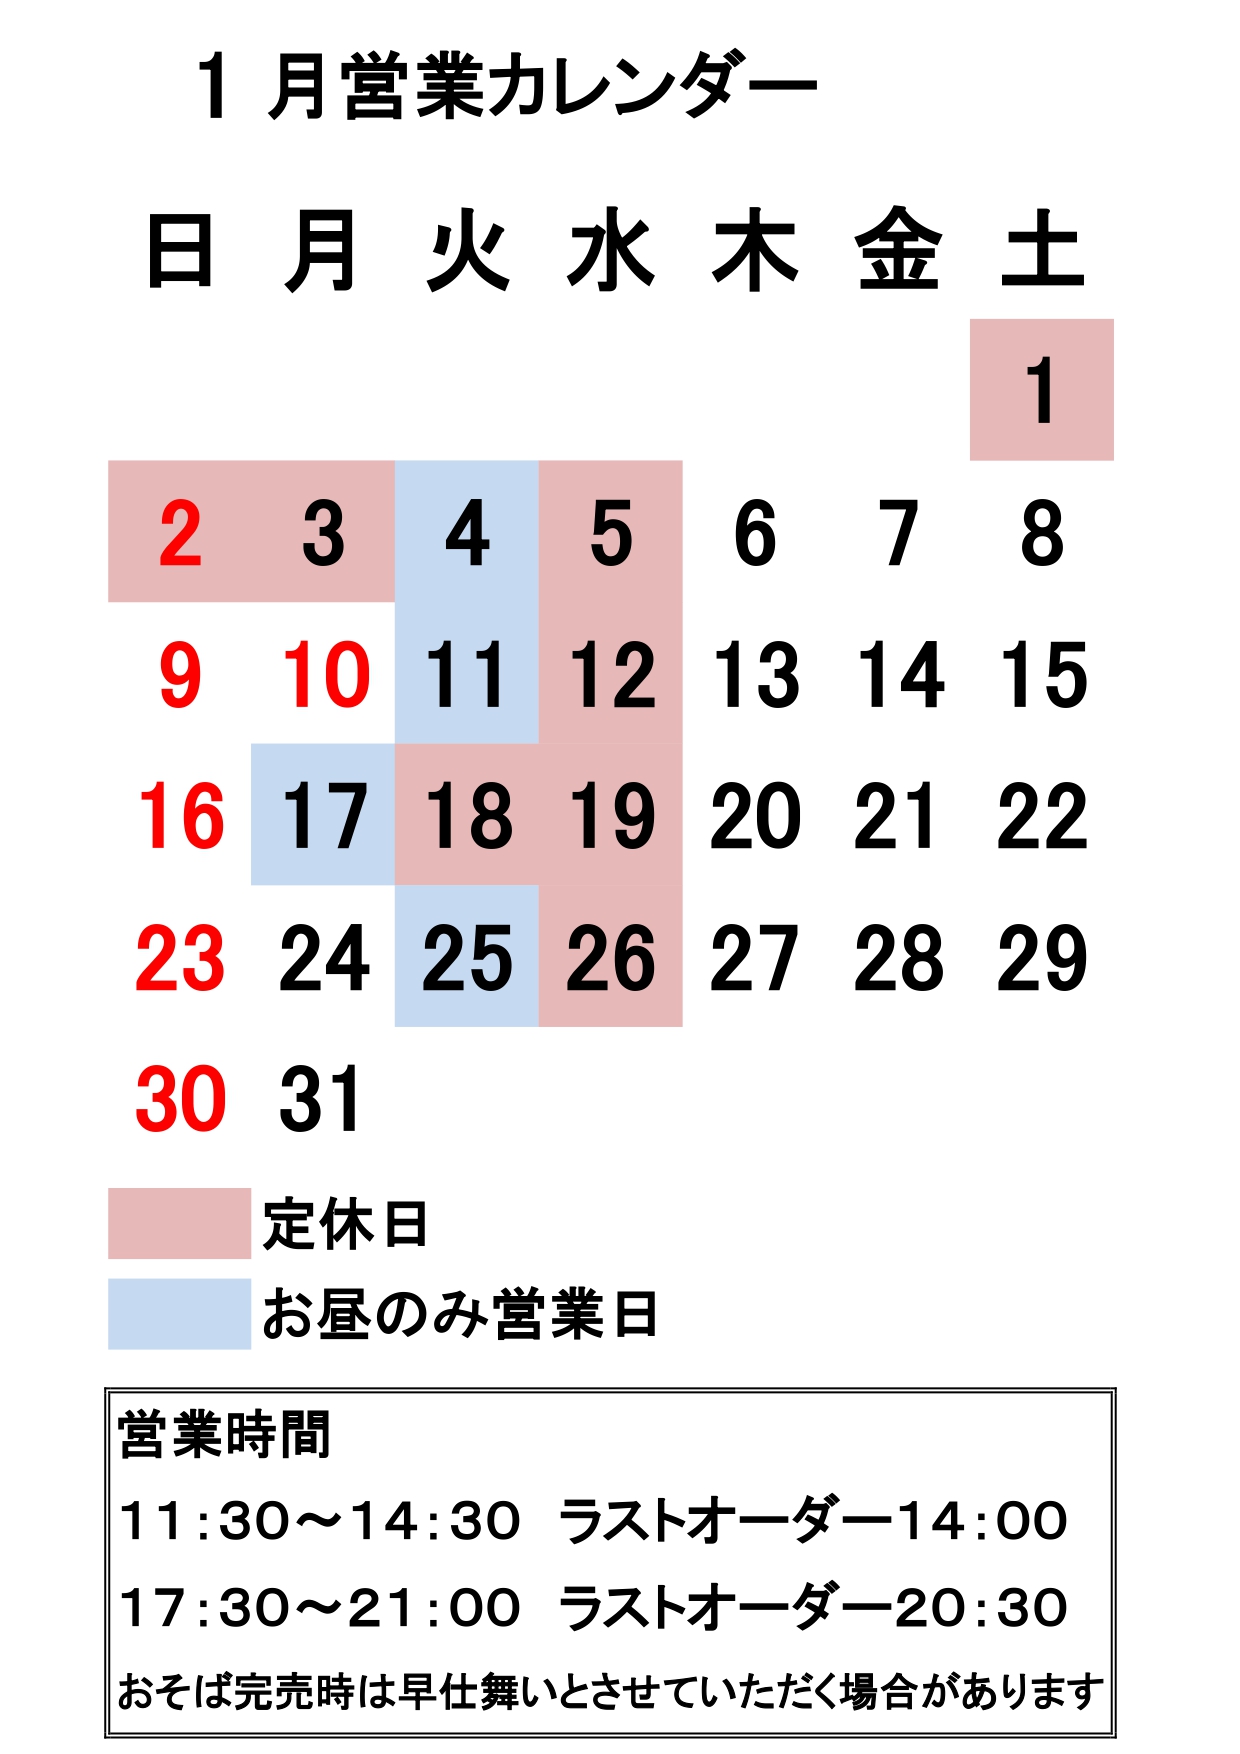 営業カレンダー_page-0001 (1).jpg